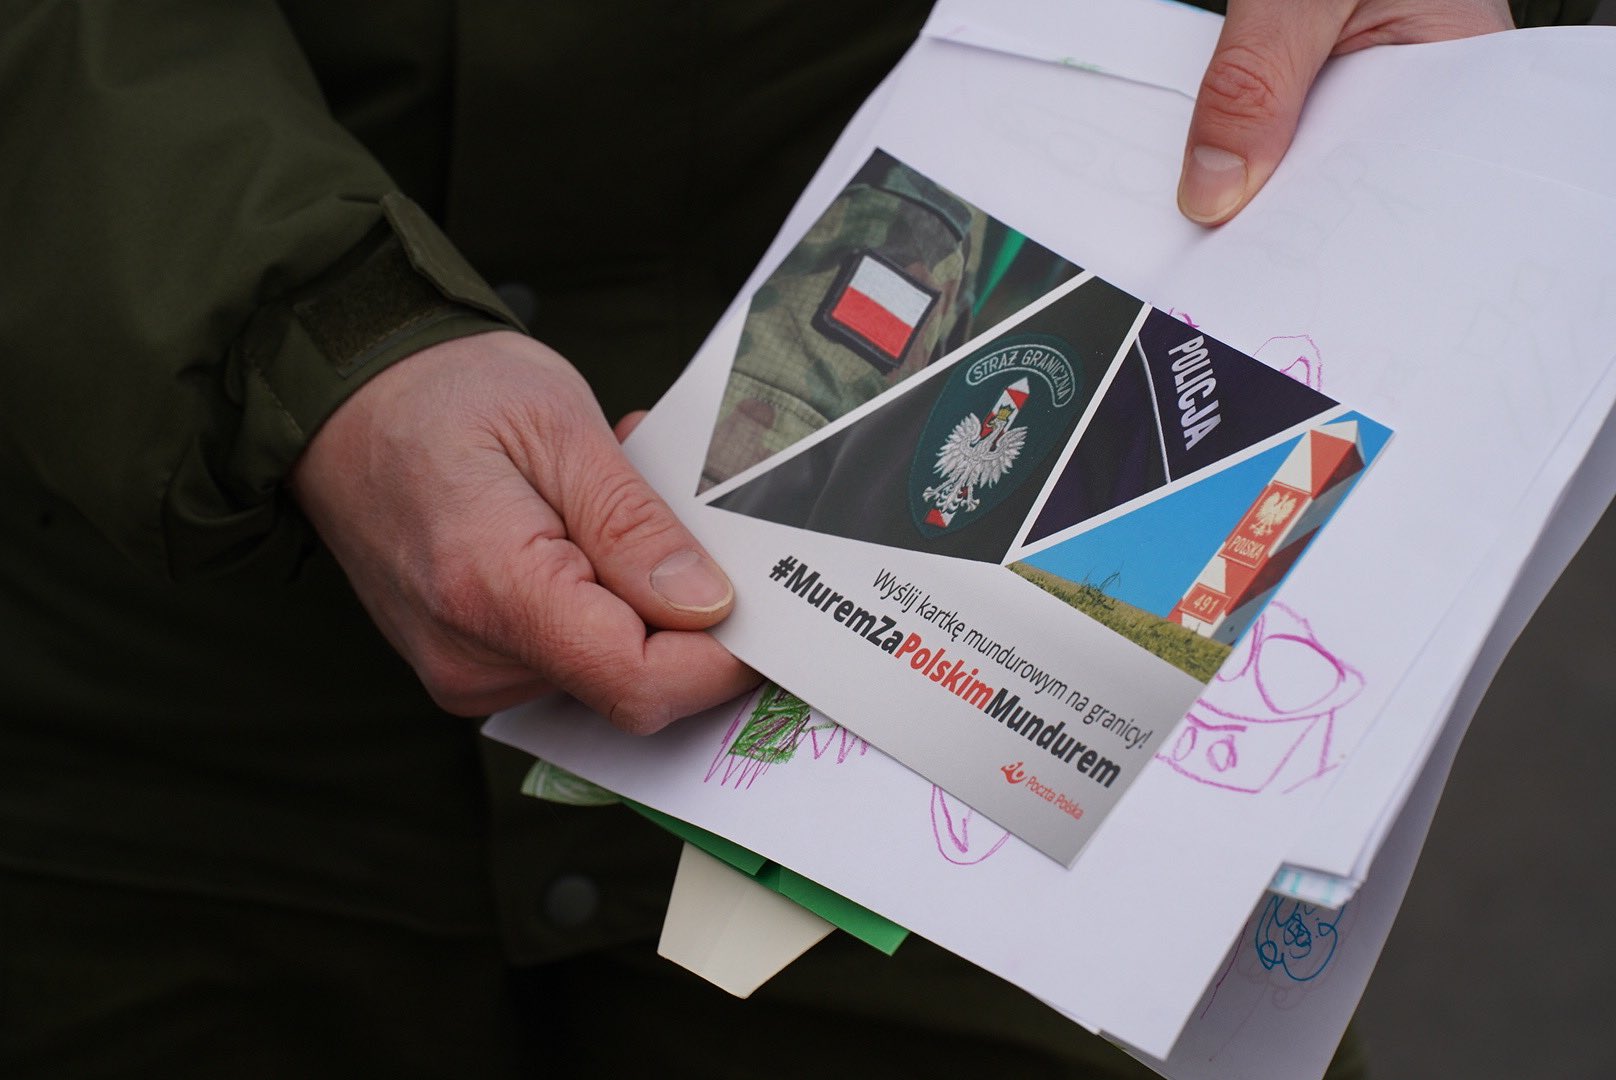 Żołnierze i funkcjonariusze służący na granicy dostali z całego kraju tysiące kartek z życzeniami (zdjęcia)